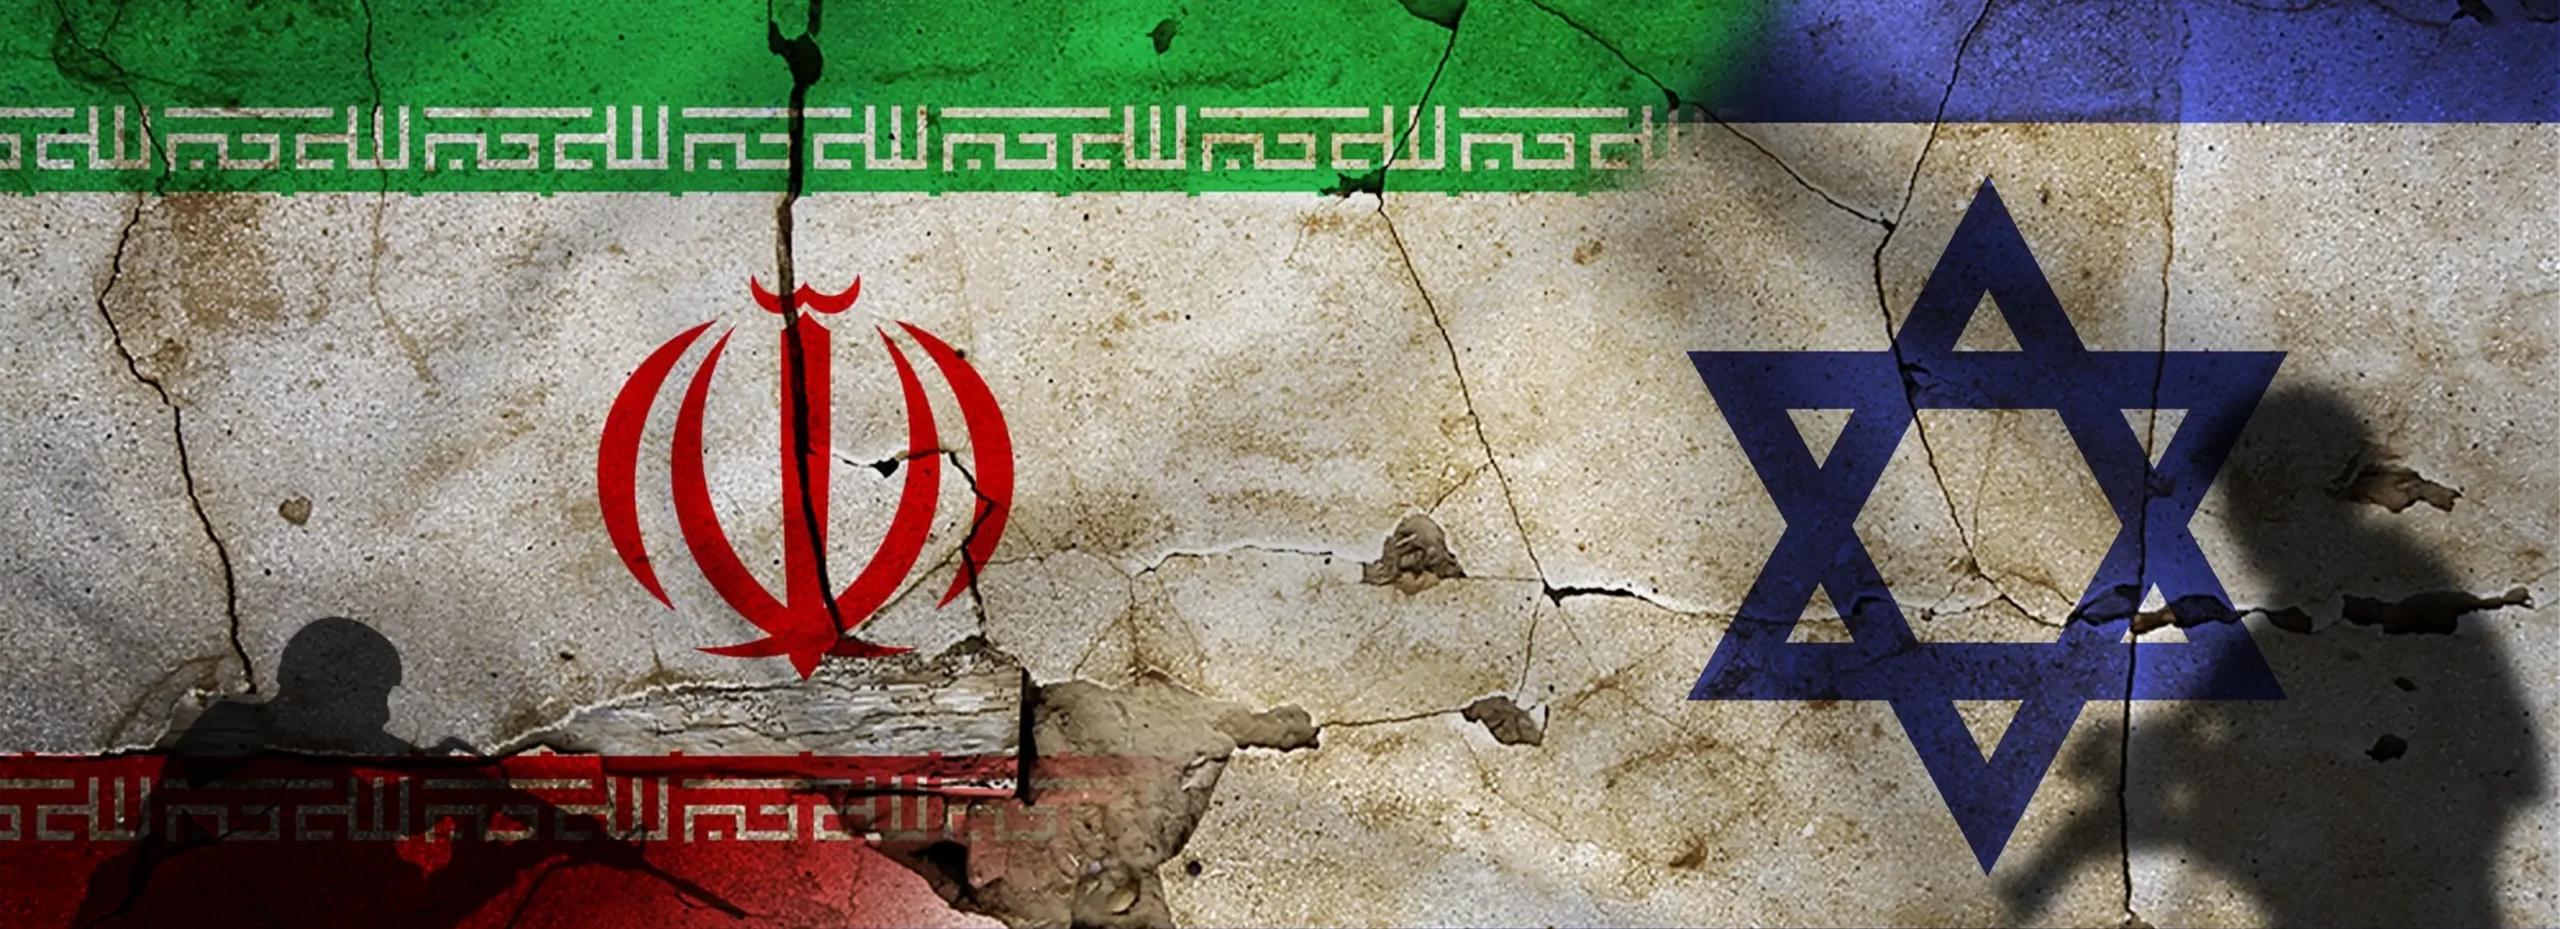 الهجوم المتوقع: انعكاسات التصعيد الإيراني الإسرائيلي على المنطقة